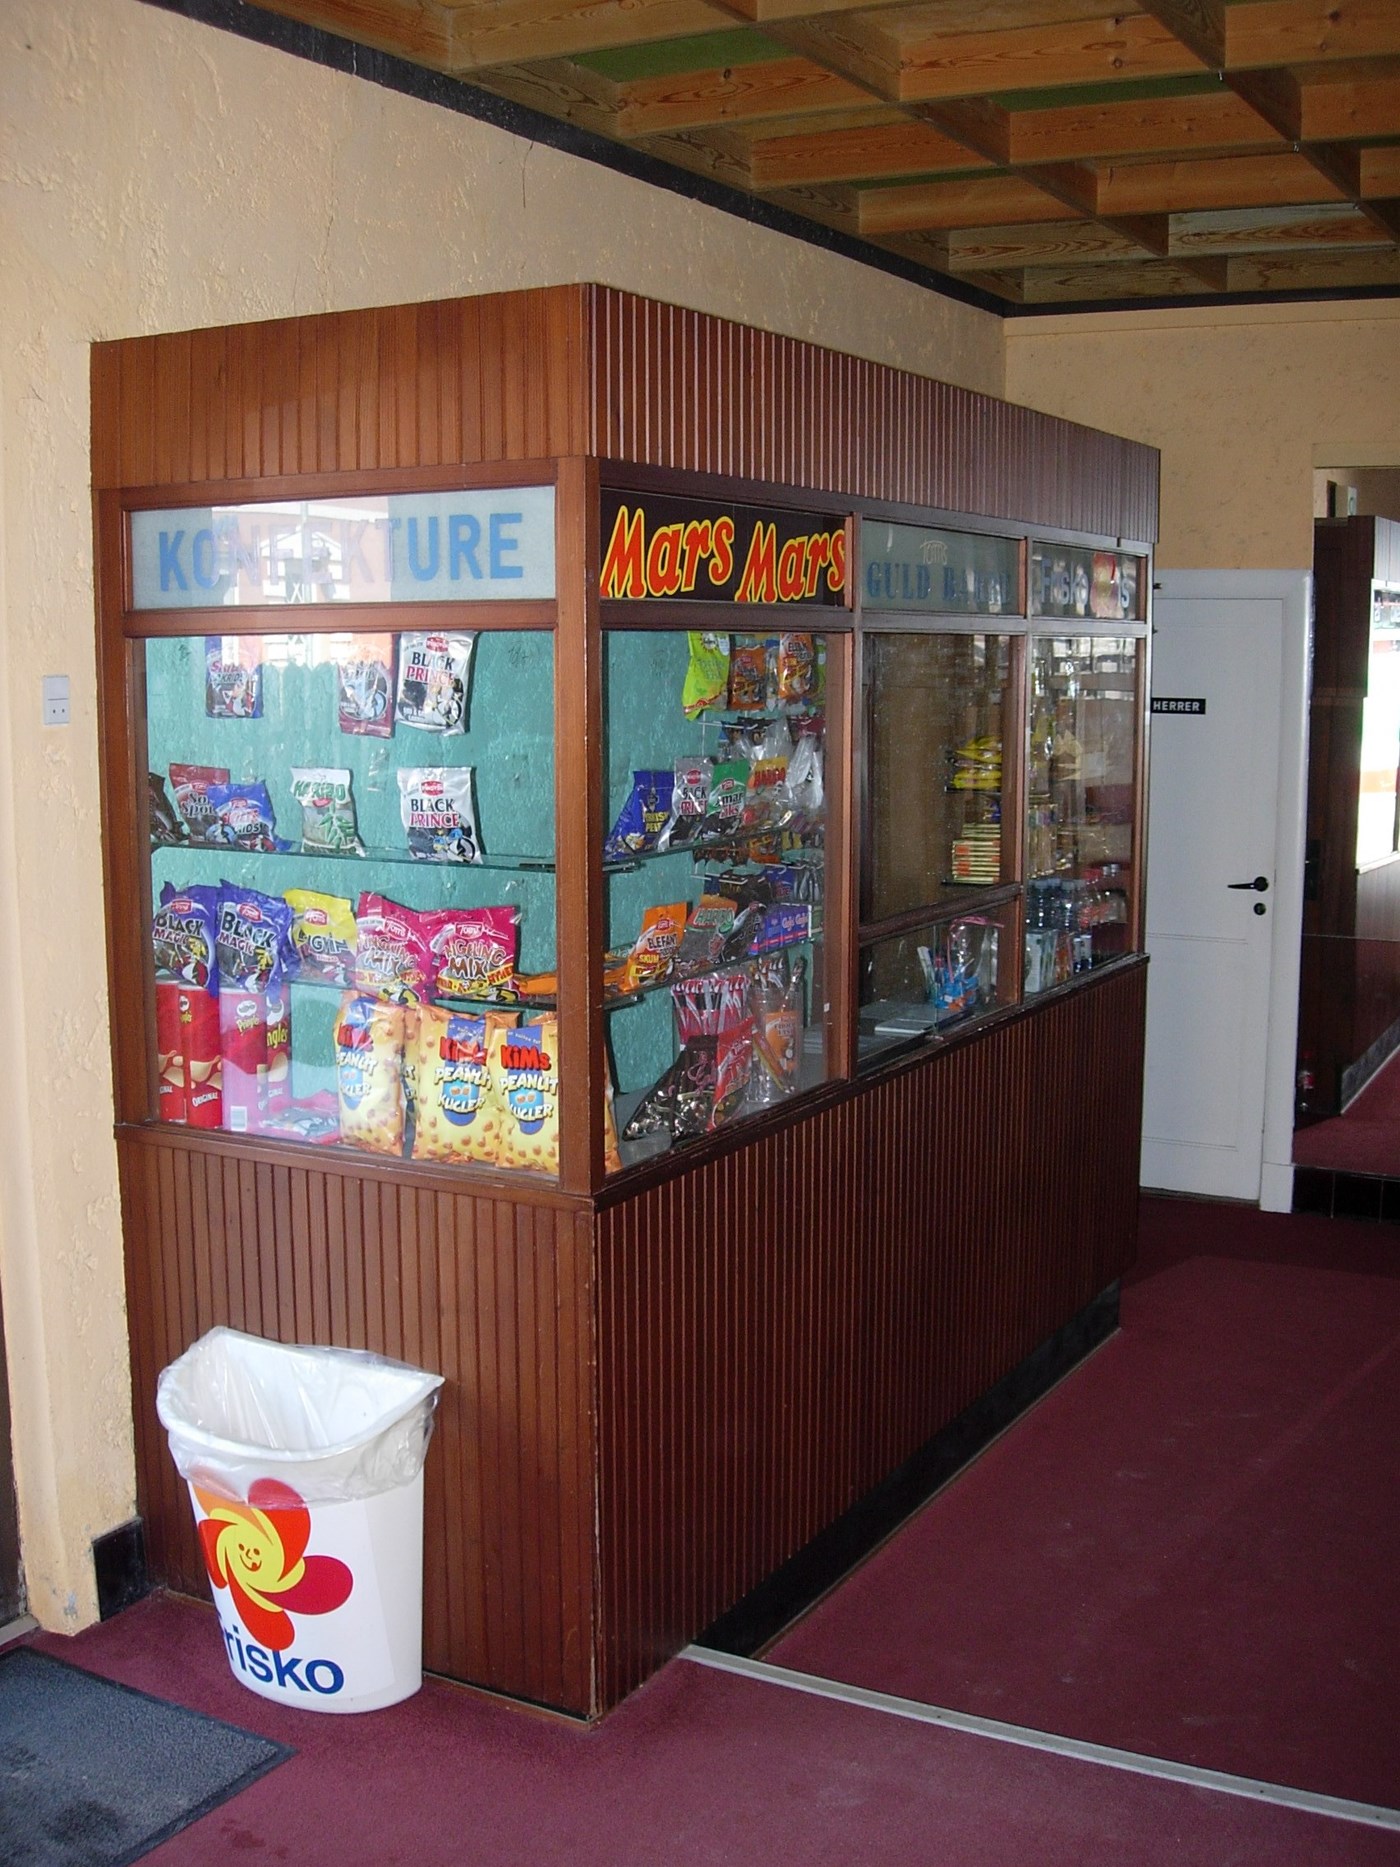 Udsalg af slik og sodavand i forhallen, 2006. Privat foto